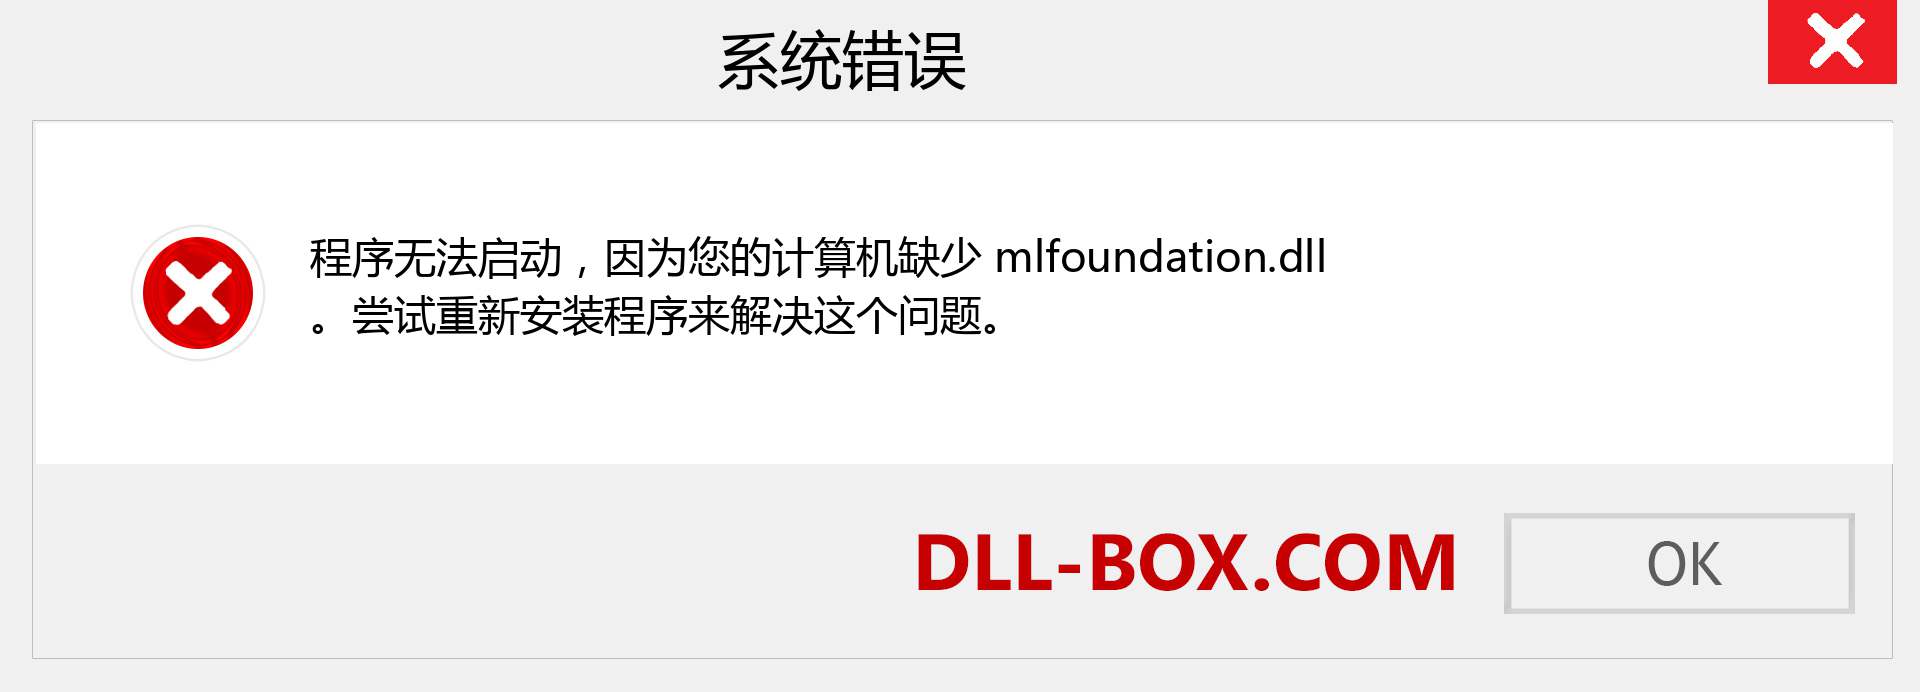 mlfoundation.dll 文件丢失？。 适用于 Windows 7、8、10 的下载 - 修复 Windows、照片、图像上的 mlfoundation dll 丢失错误